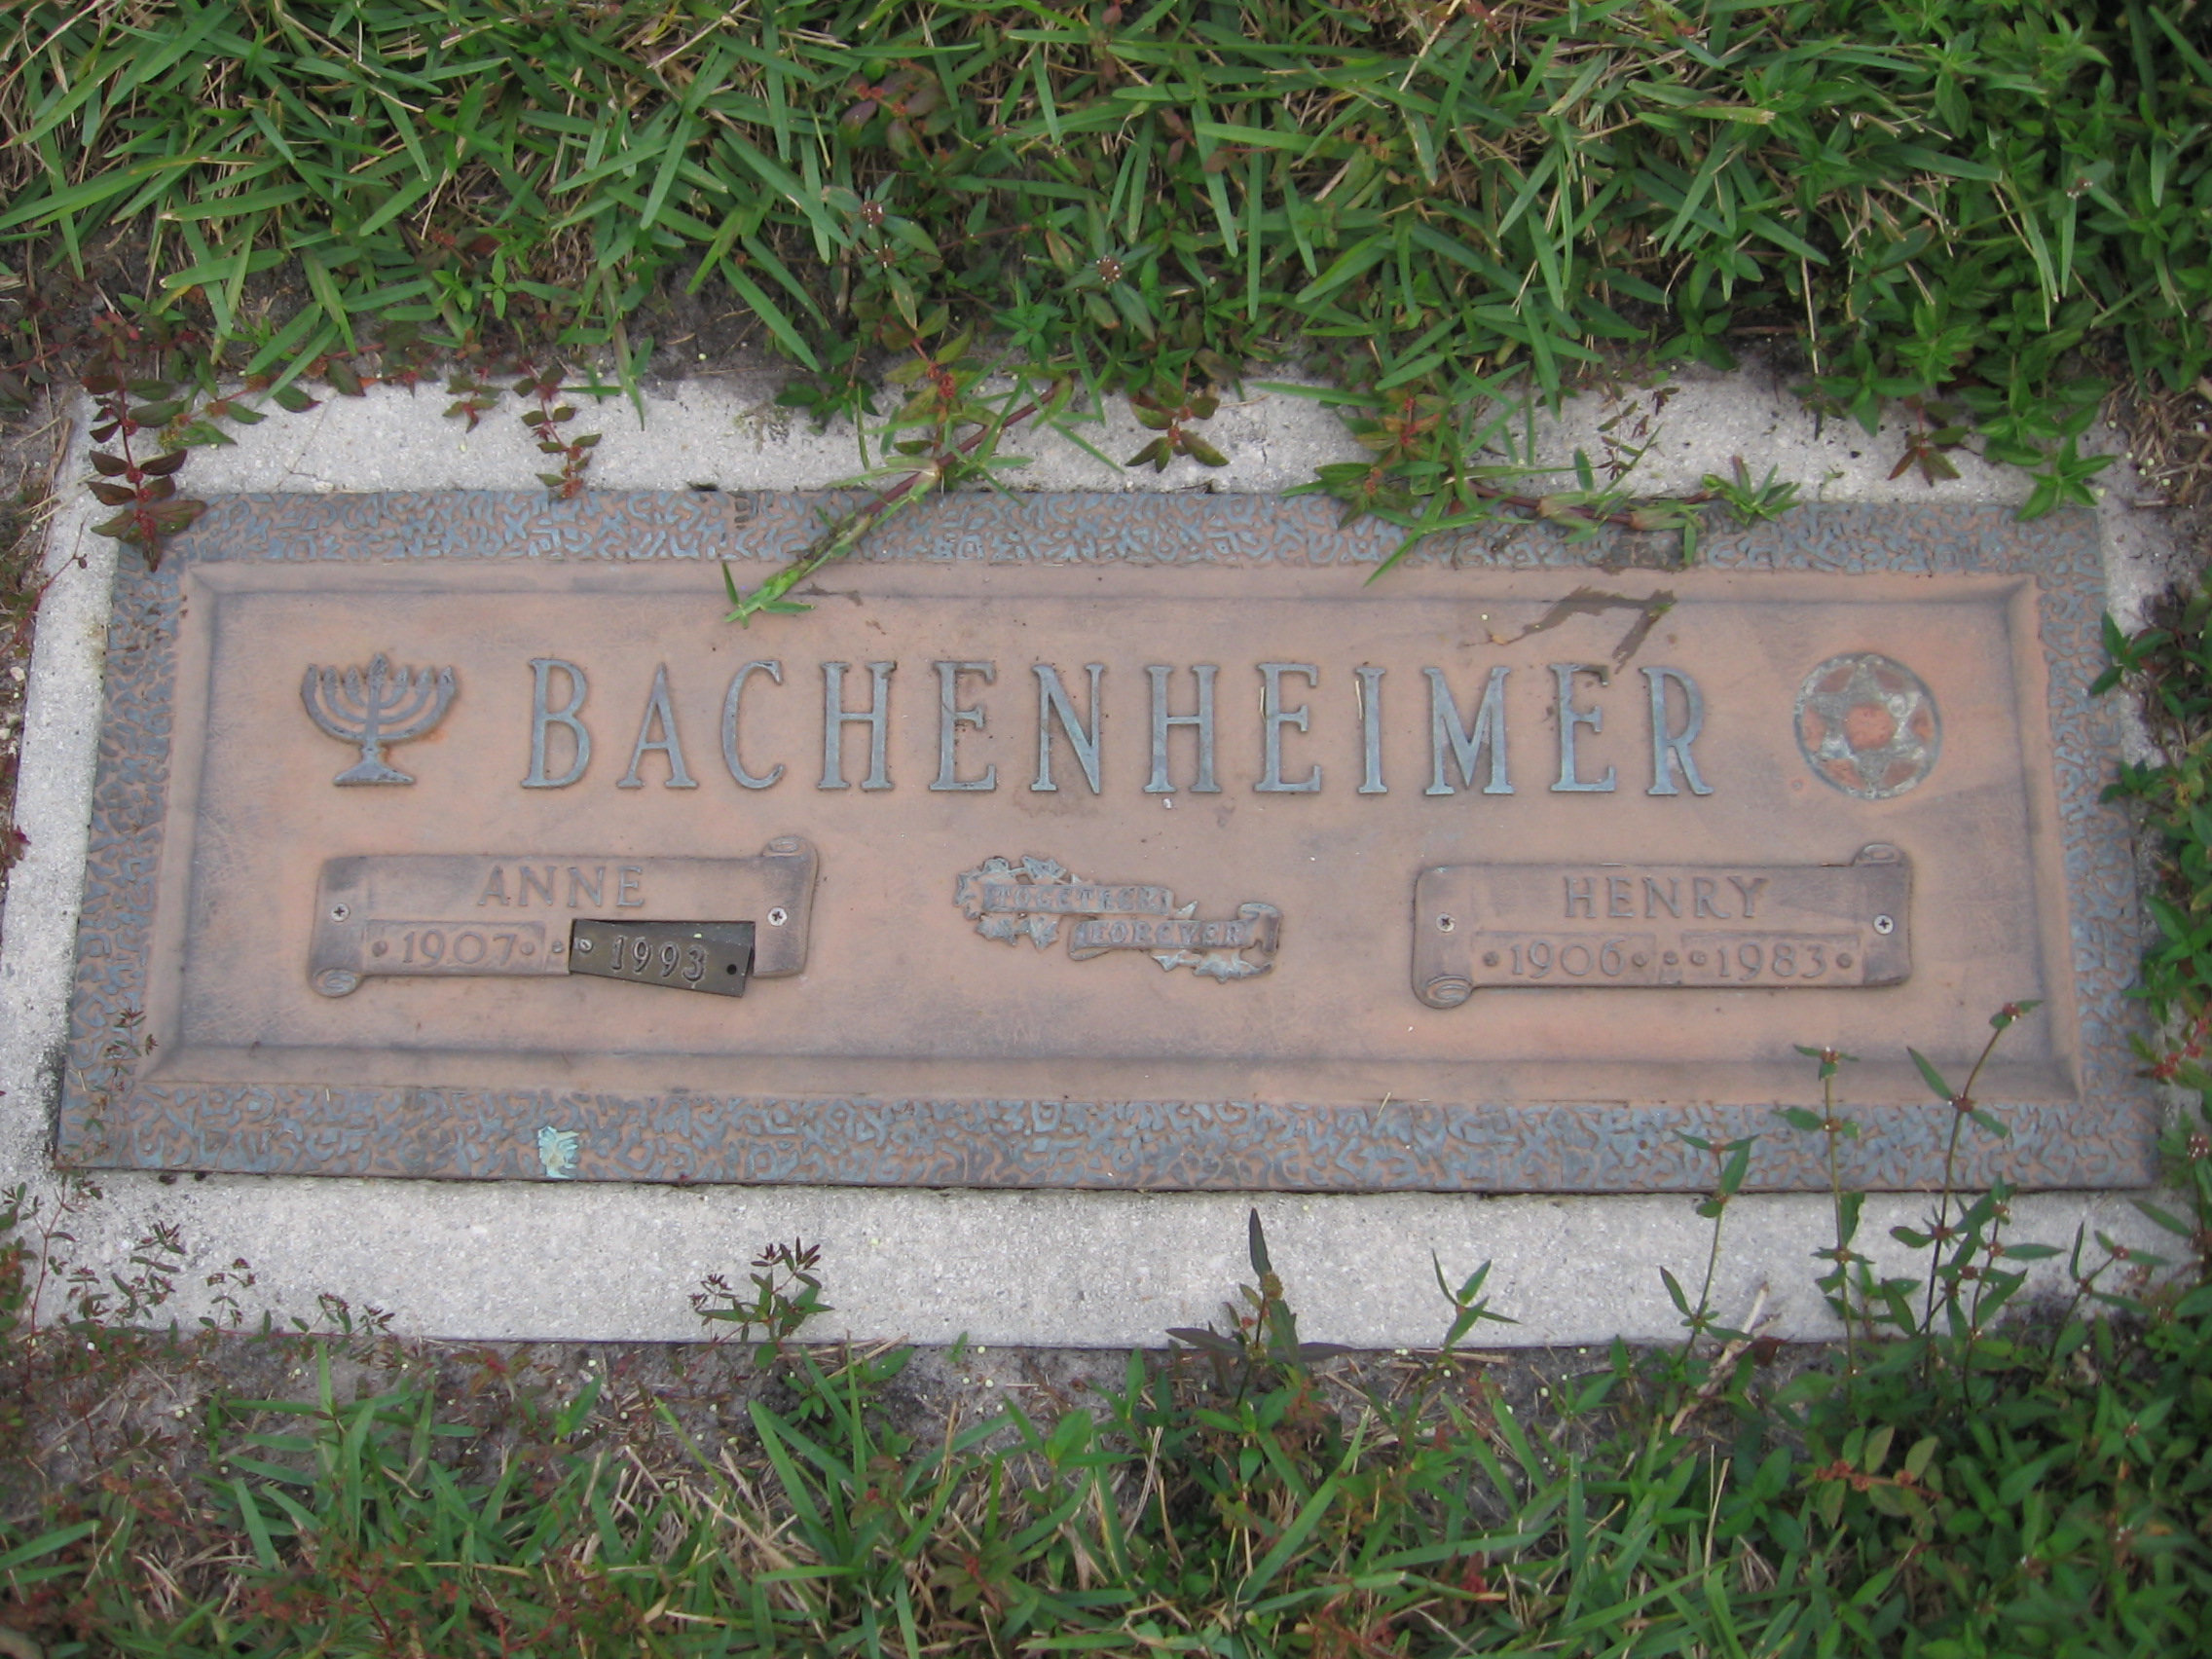 Henry Bachenheimer